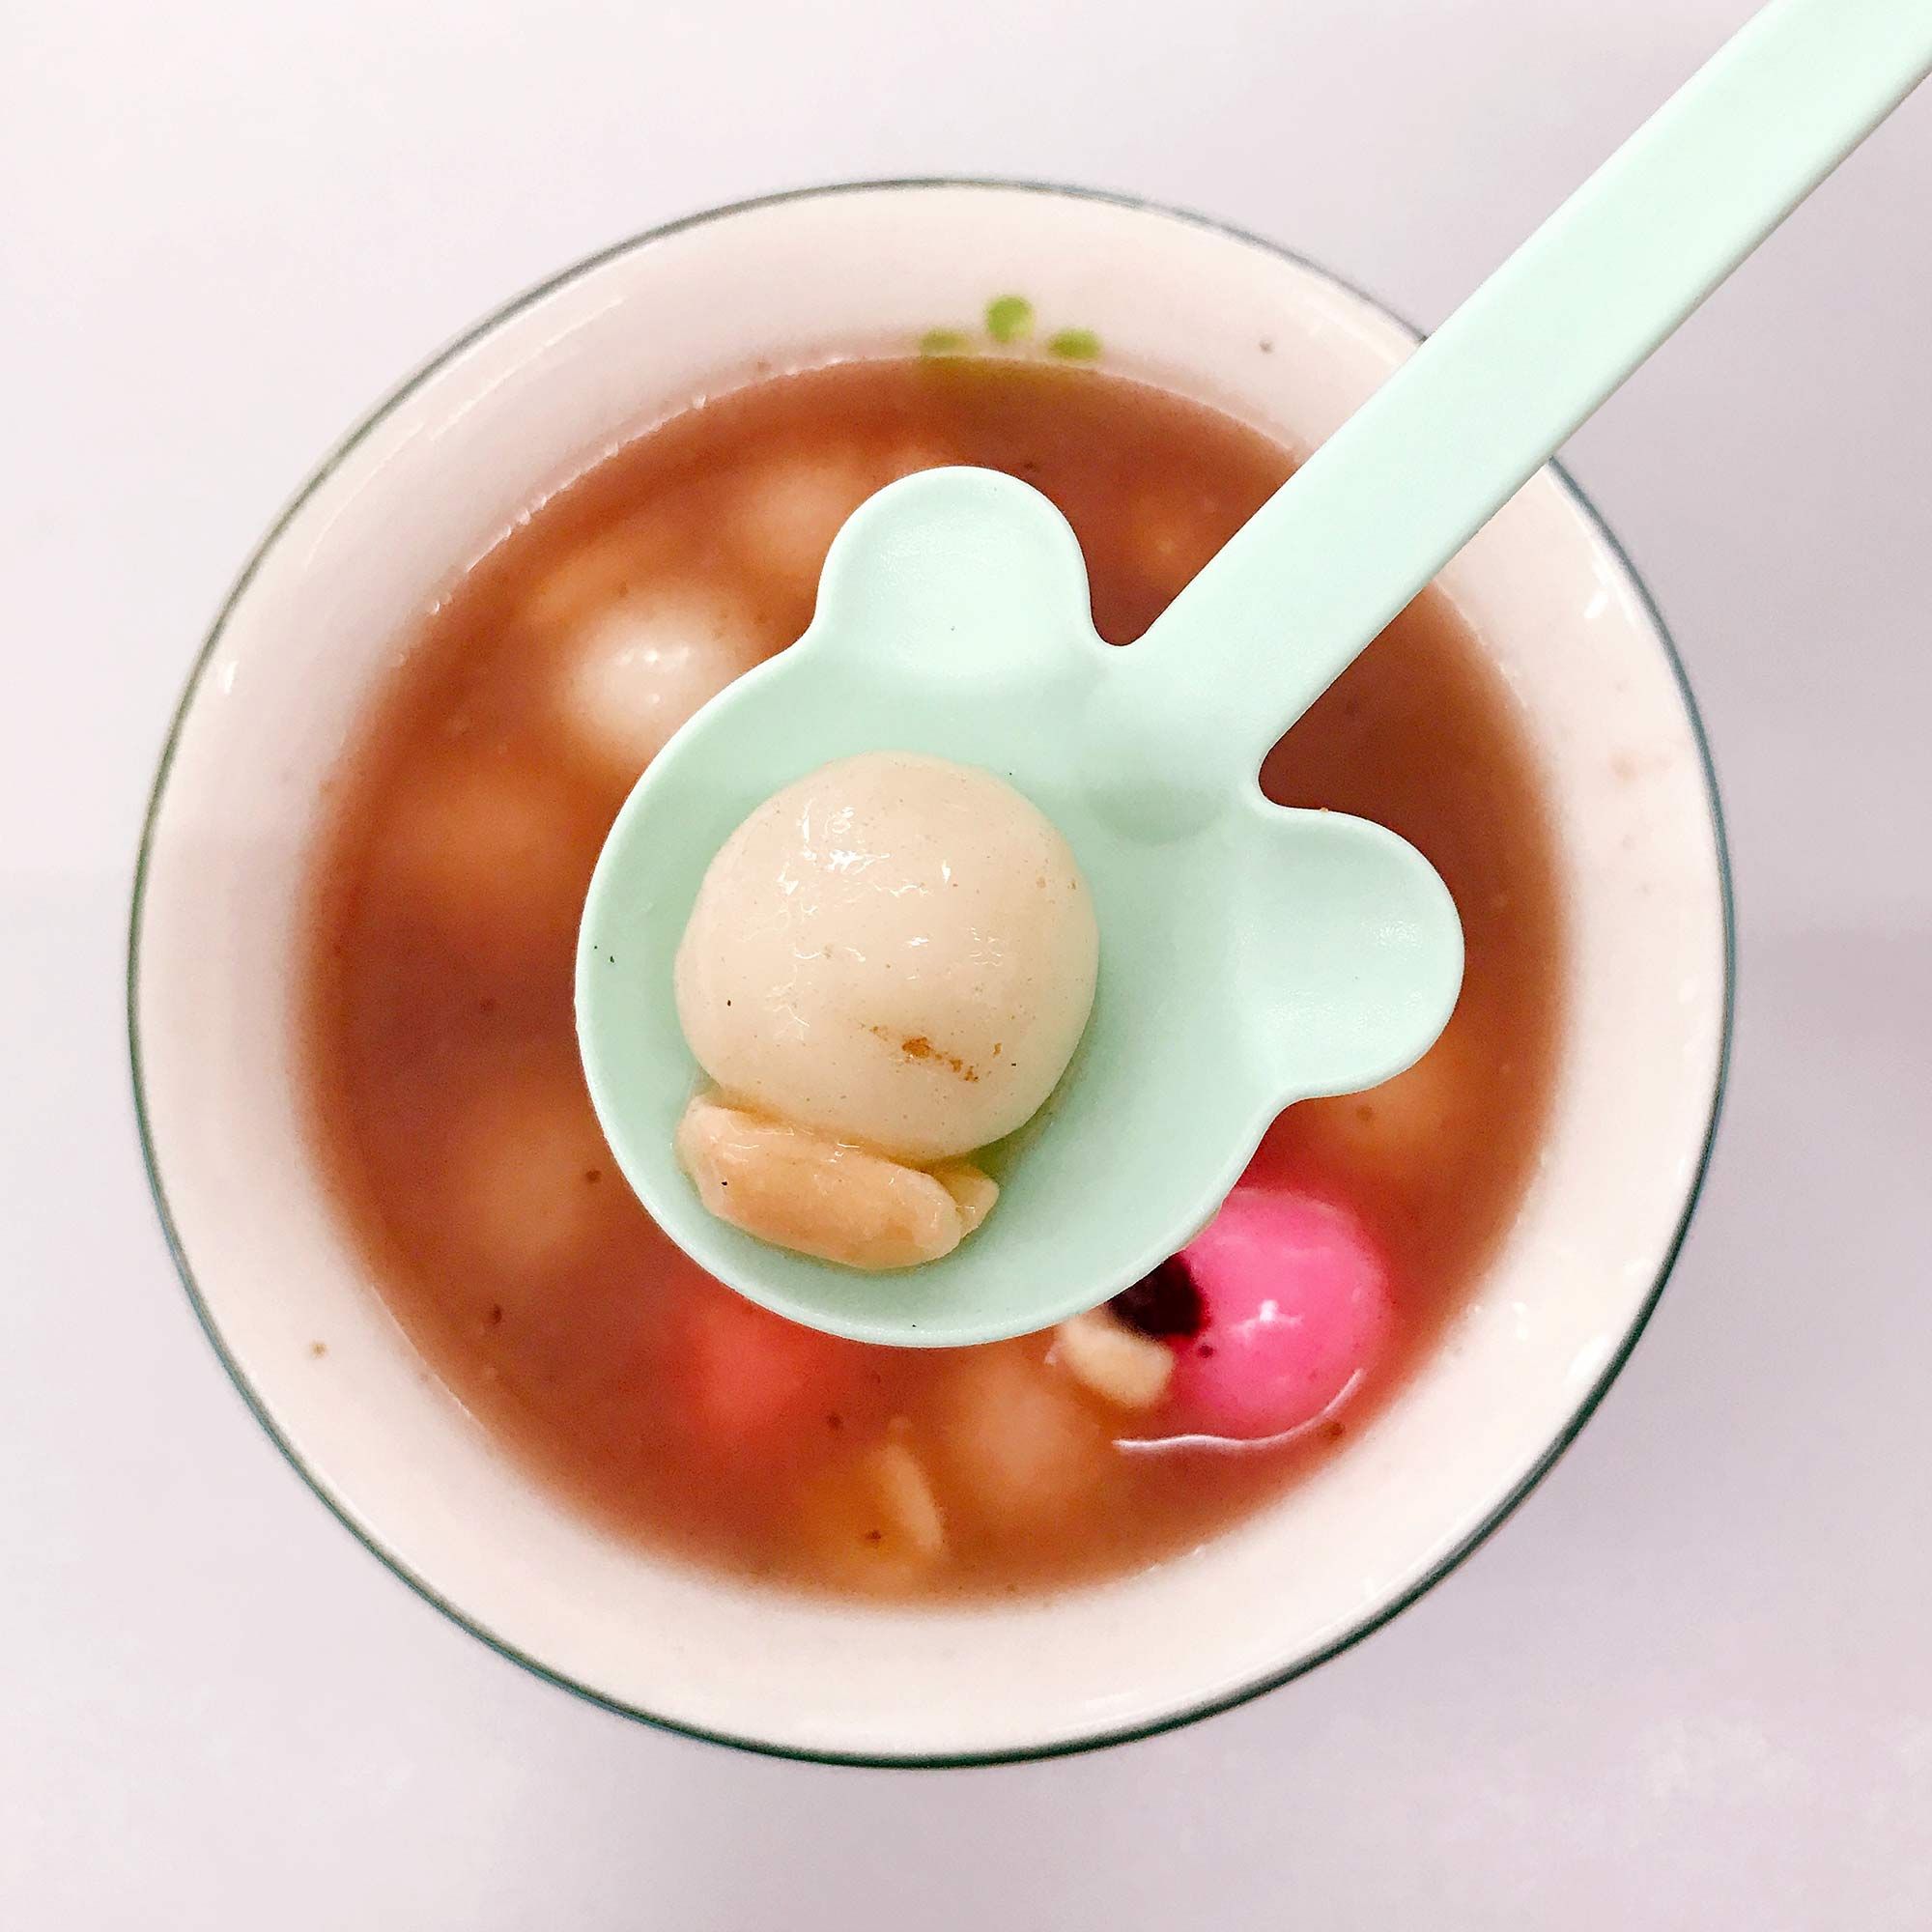 耐熱クマスプーンは、温かいおかゆ、温かいスープ、シチューなど、温度が高い食事に適しています。